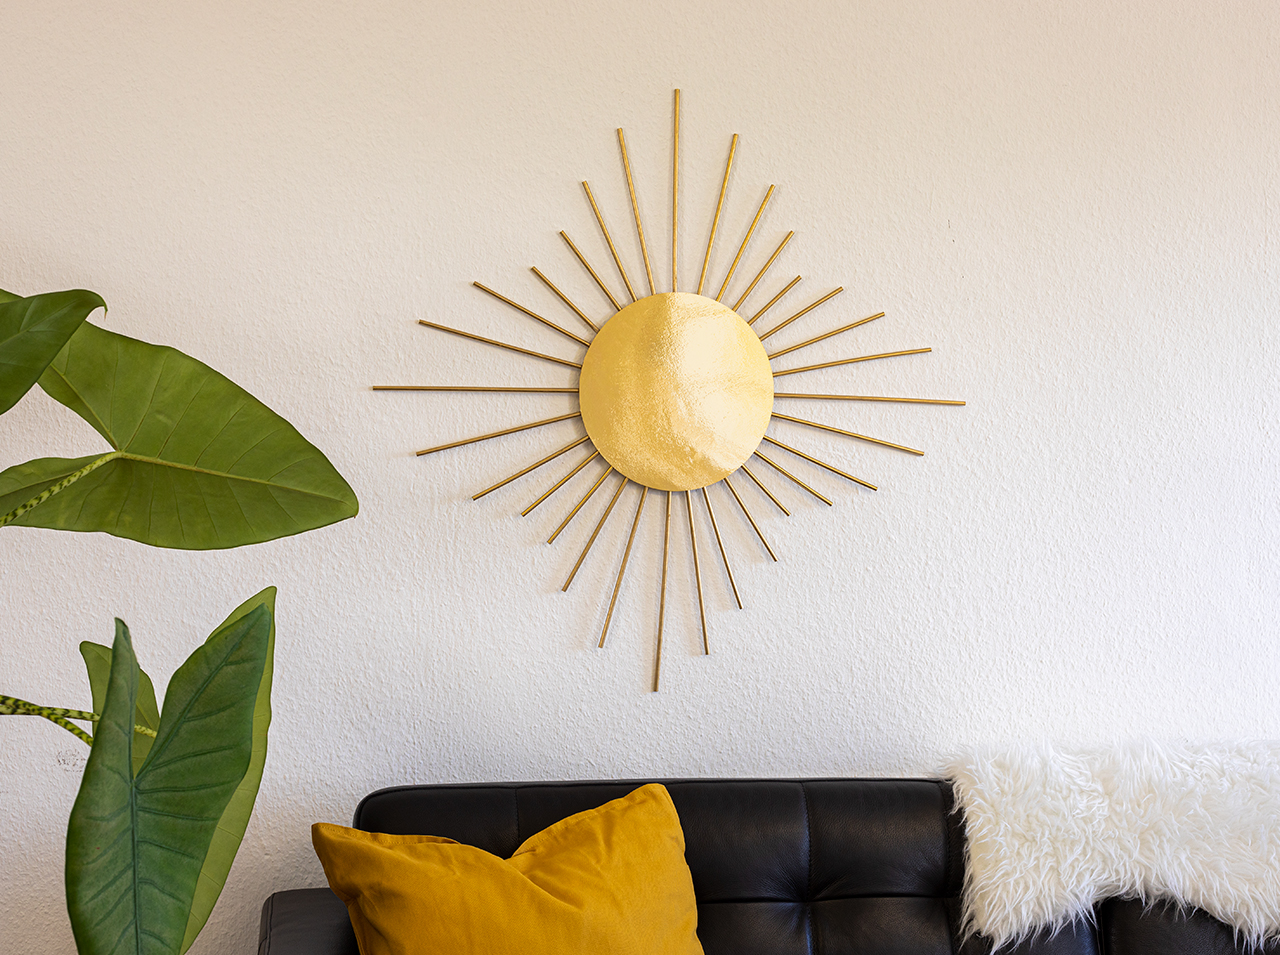 Sur un mur blanc est accroché un miroir en forme de soleil avec un cercle de film doré à effet miroir et des tiges en bois dorées tout autour.